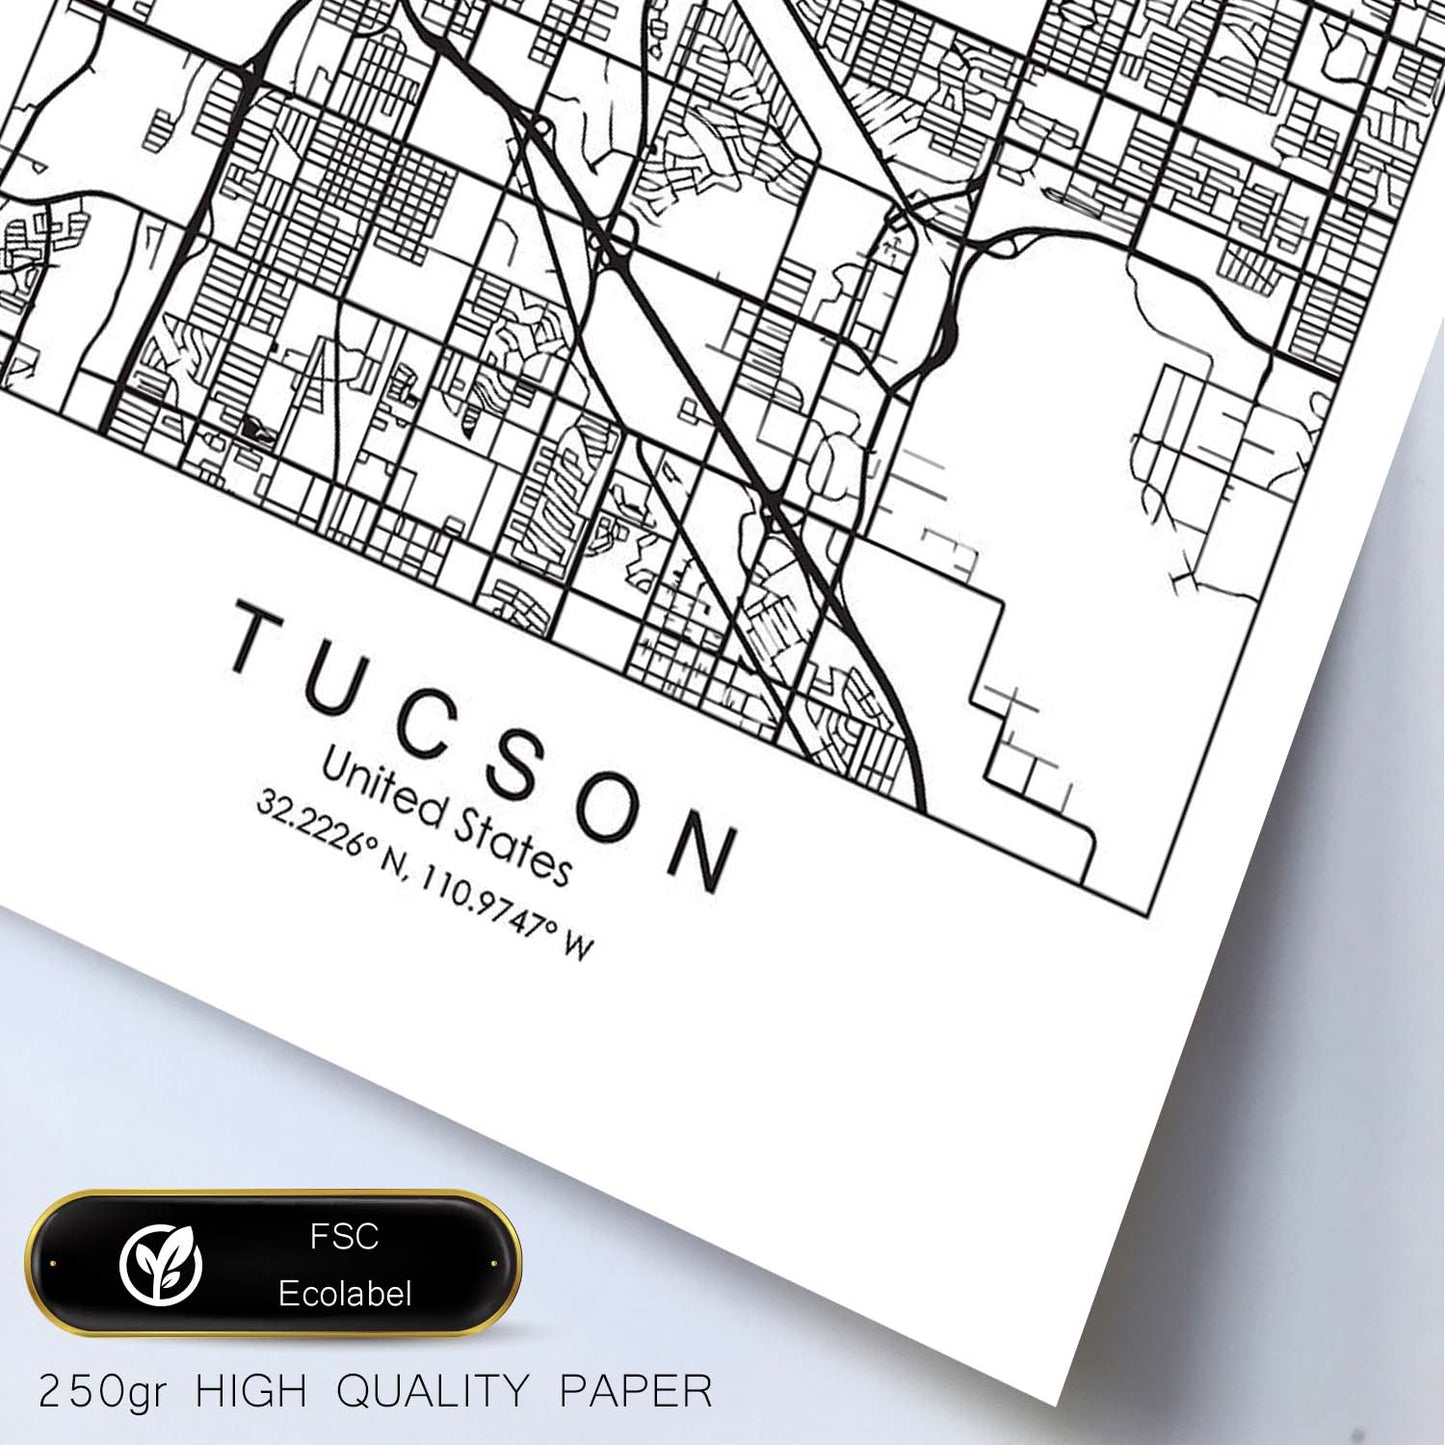 Poster con mapa de Tucson. Lámina de Estados Unidos, con imágenes de mapas y carreteras-Artwork-Nacnic-Nacnic Estudio SL